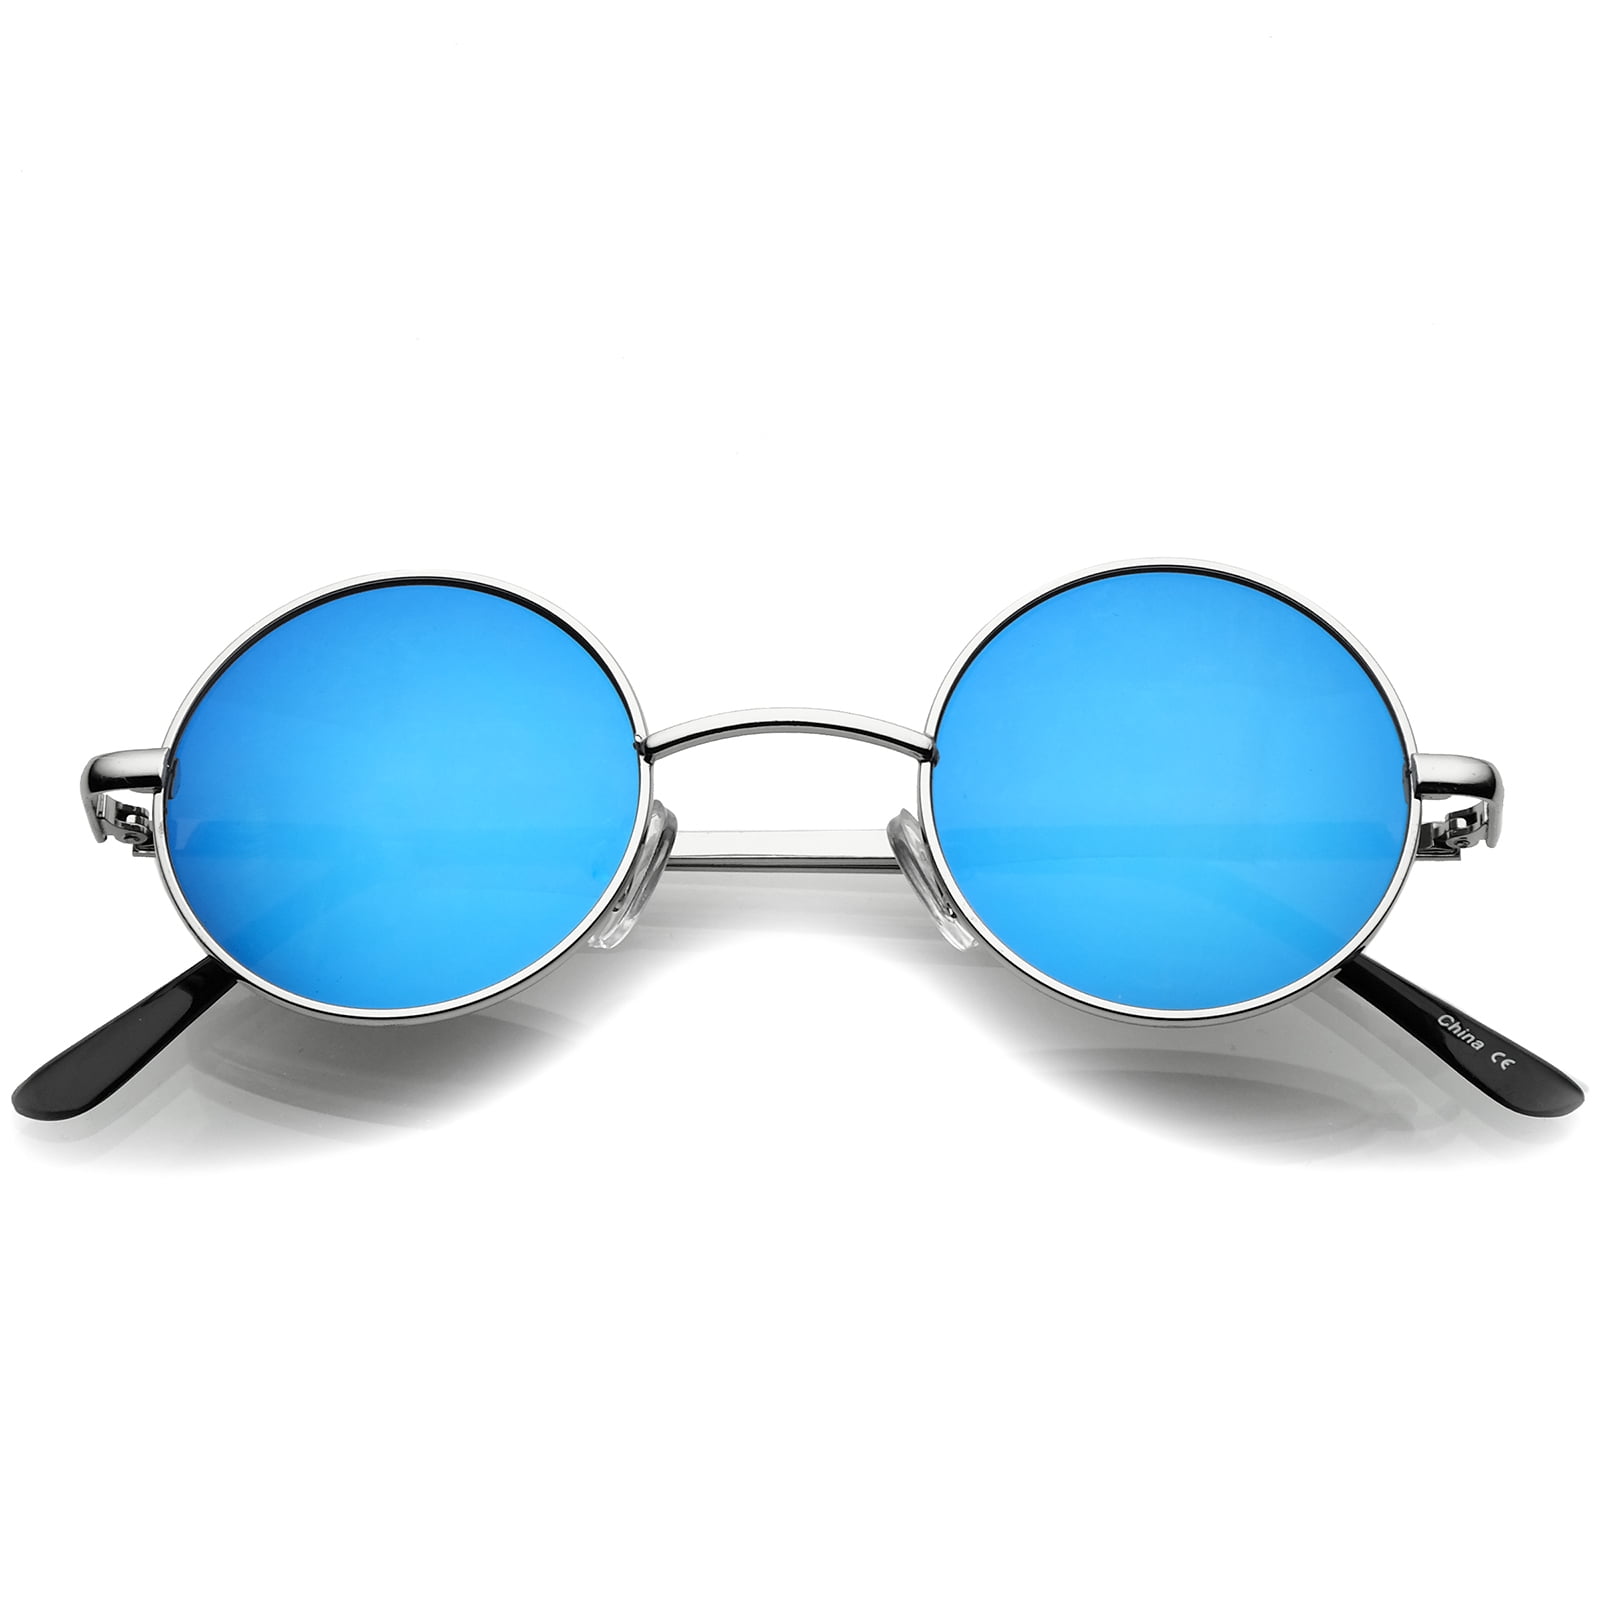 Sunglassla Sunglassla Small Retro Lennon Style Colored Mirror Lens Round Metal Sunglasses 